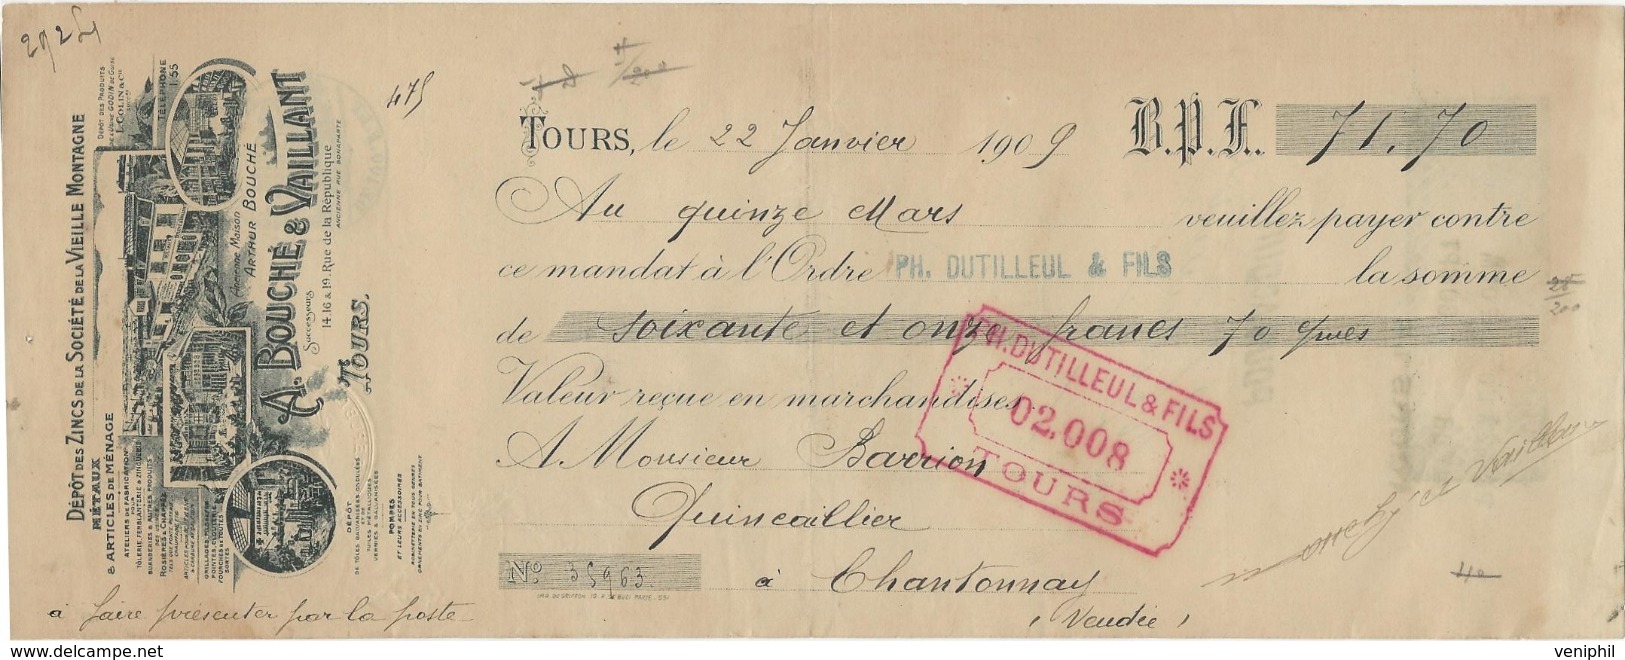 LETTRE DE CHANGE ILLUSTREE -A. BOUCHE ET VAILLANT - DEPOT DE ZING DE LA VIEILLE MONTAGNE -TOURS -1909 - Bills Of Exchange